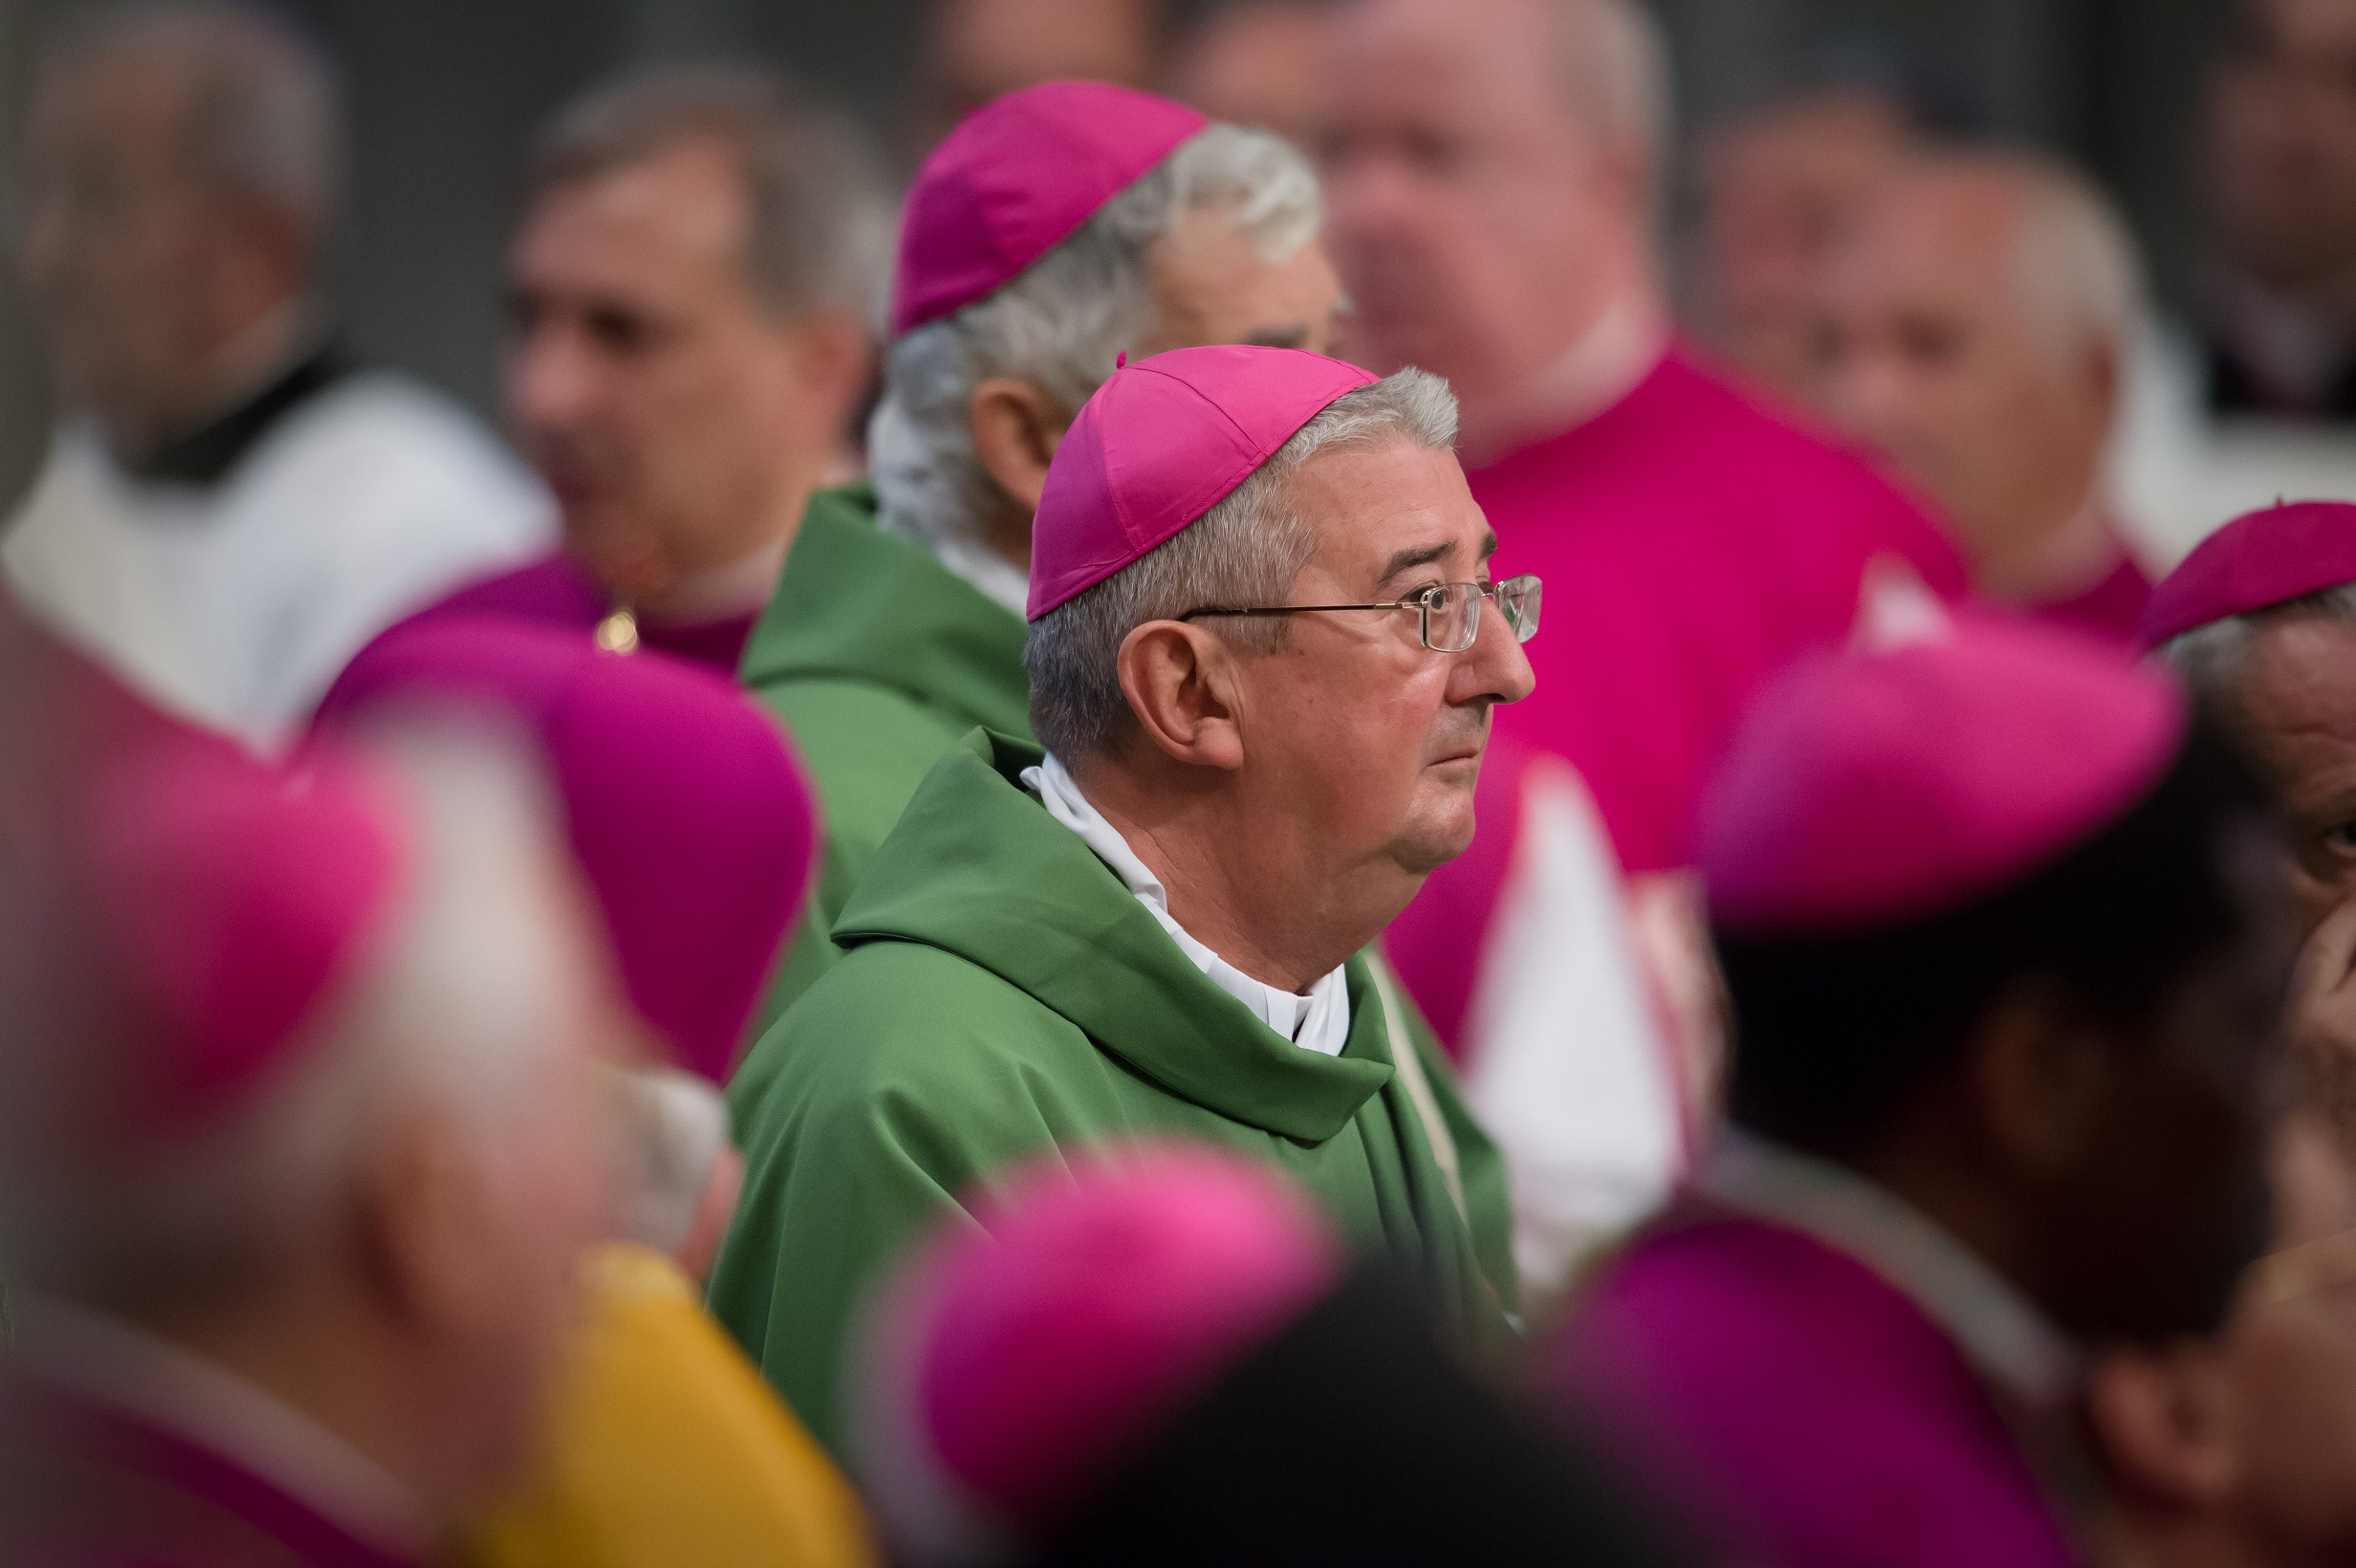 La Iglesia debe escuchar a las parejas casadas: Arzobispo